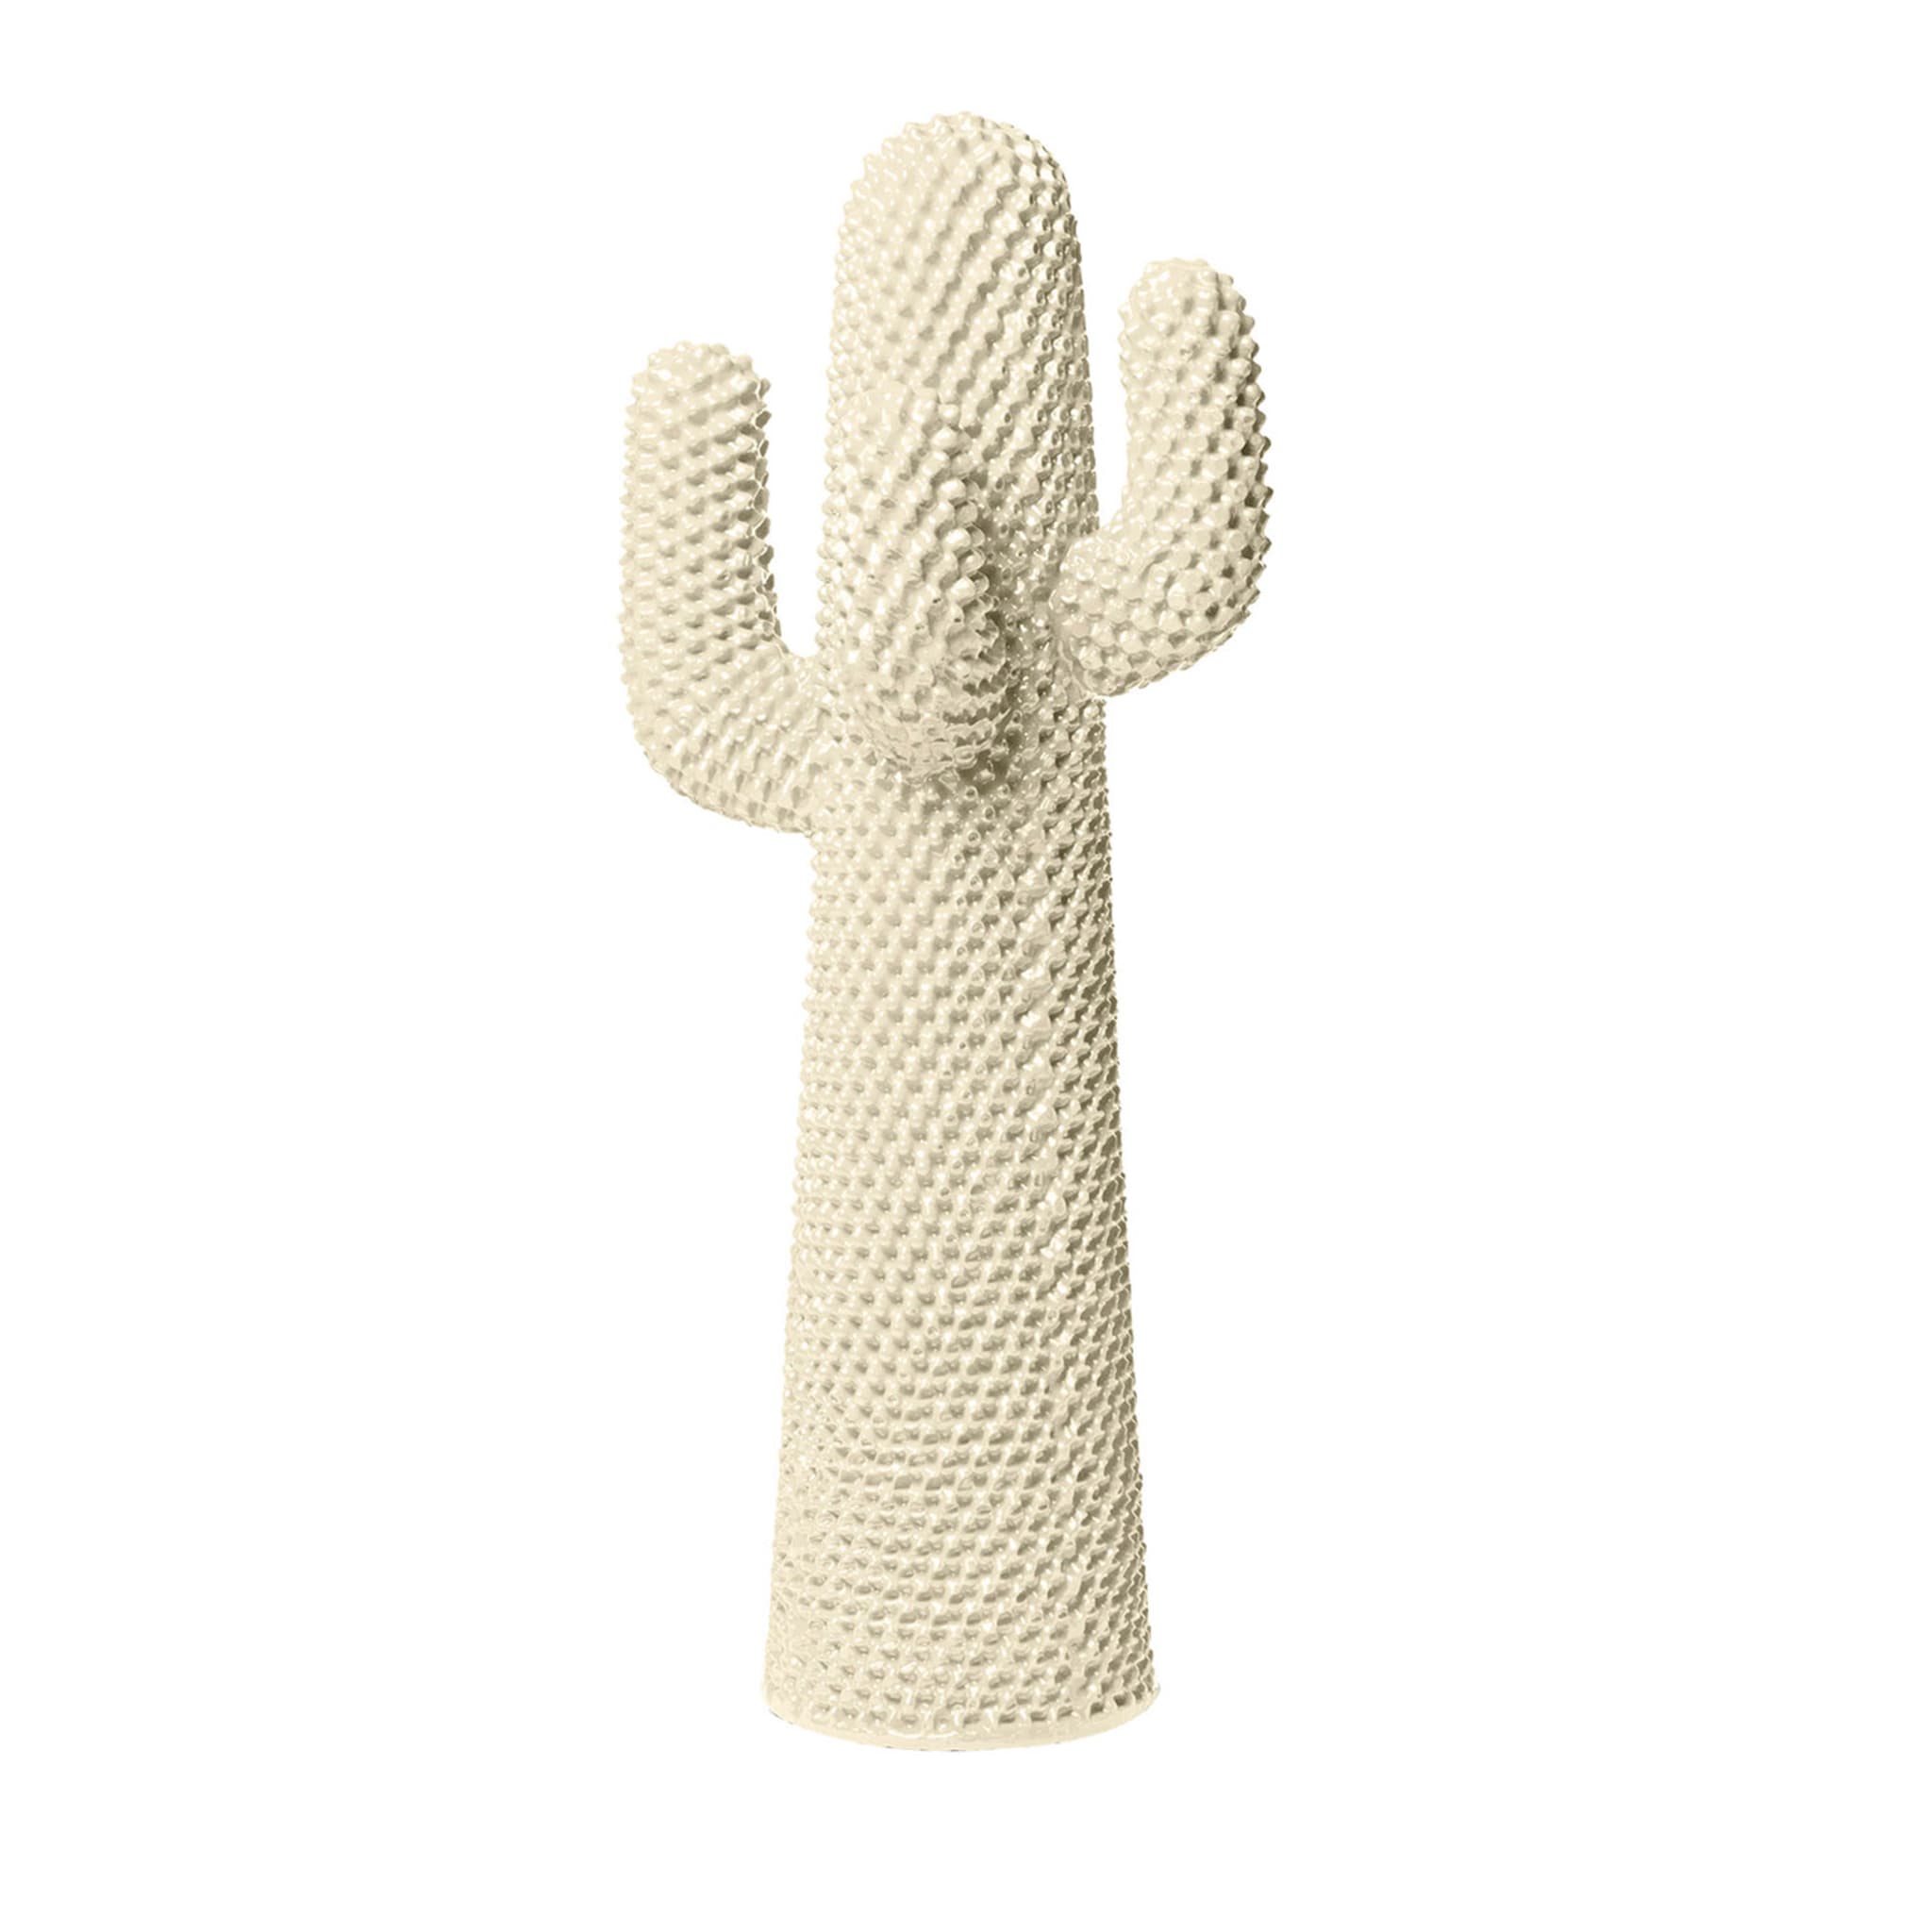 Ein weiterer weißer Kaktus-Garderobenständer von Drocco/Mello - Hauptansicht